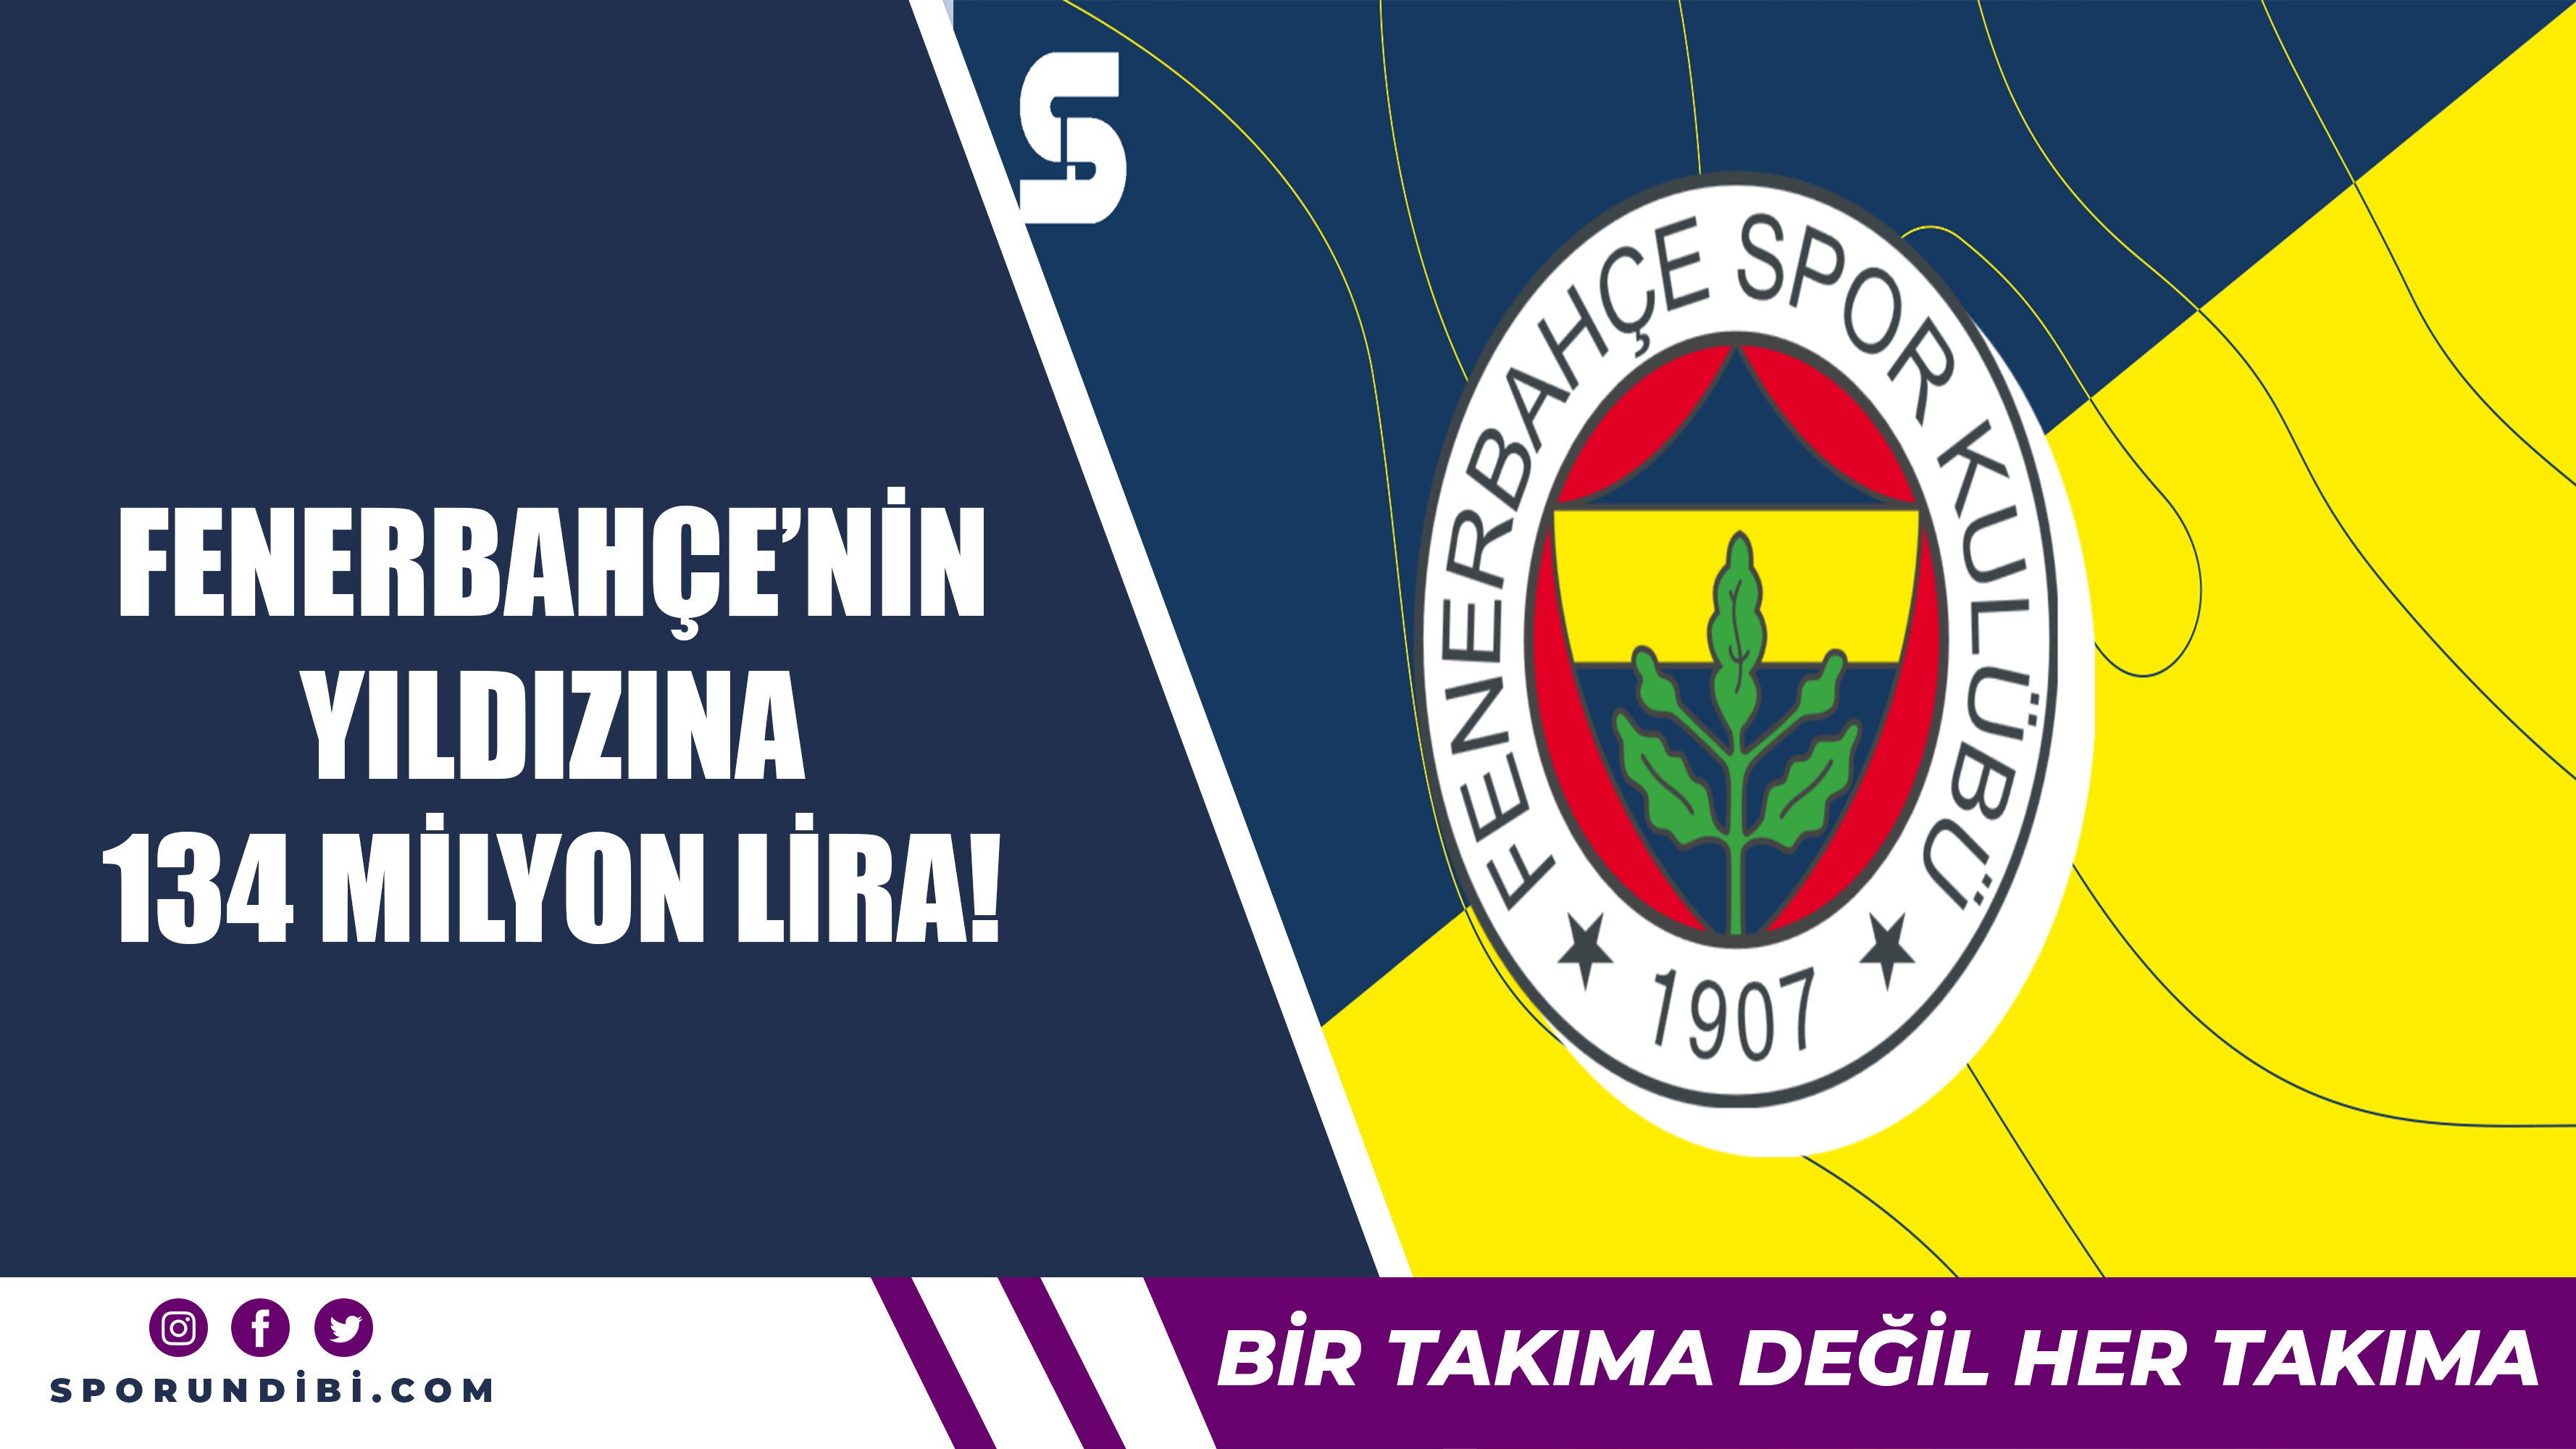 Fenerbahçe'nin yıldızına 134 milyon lira!